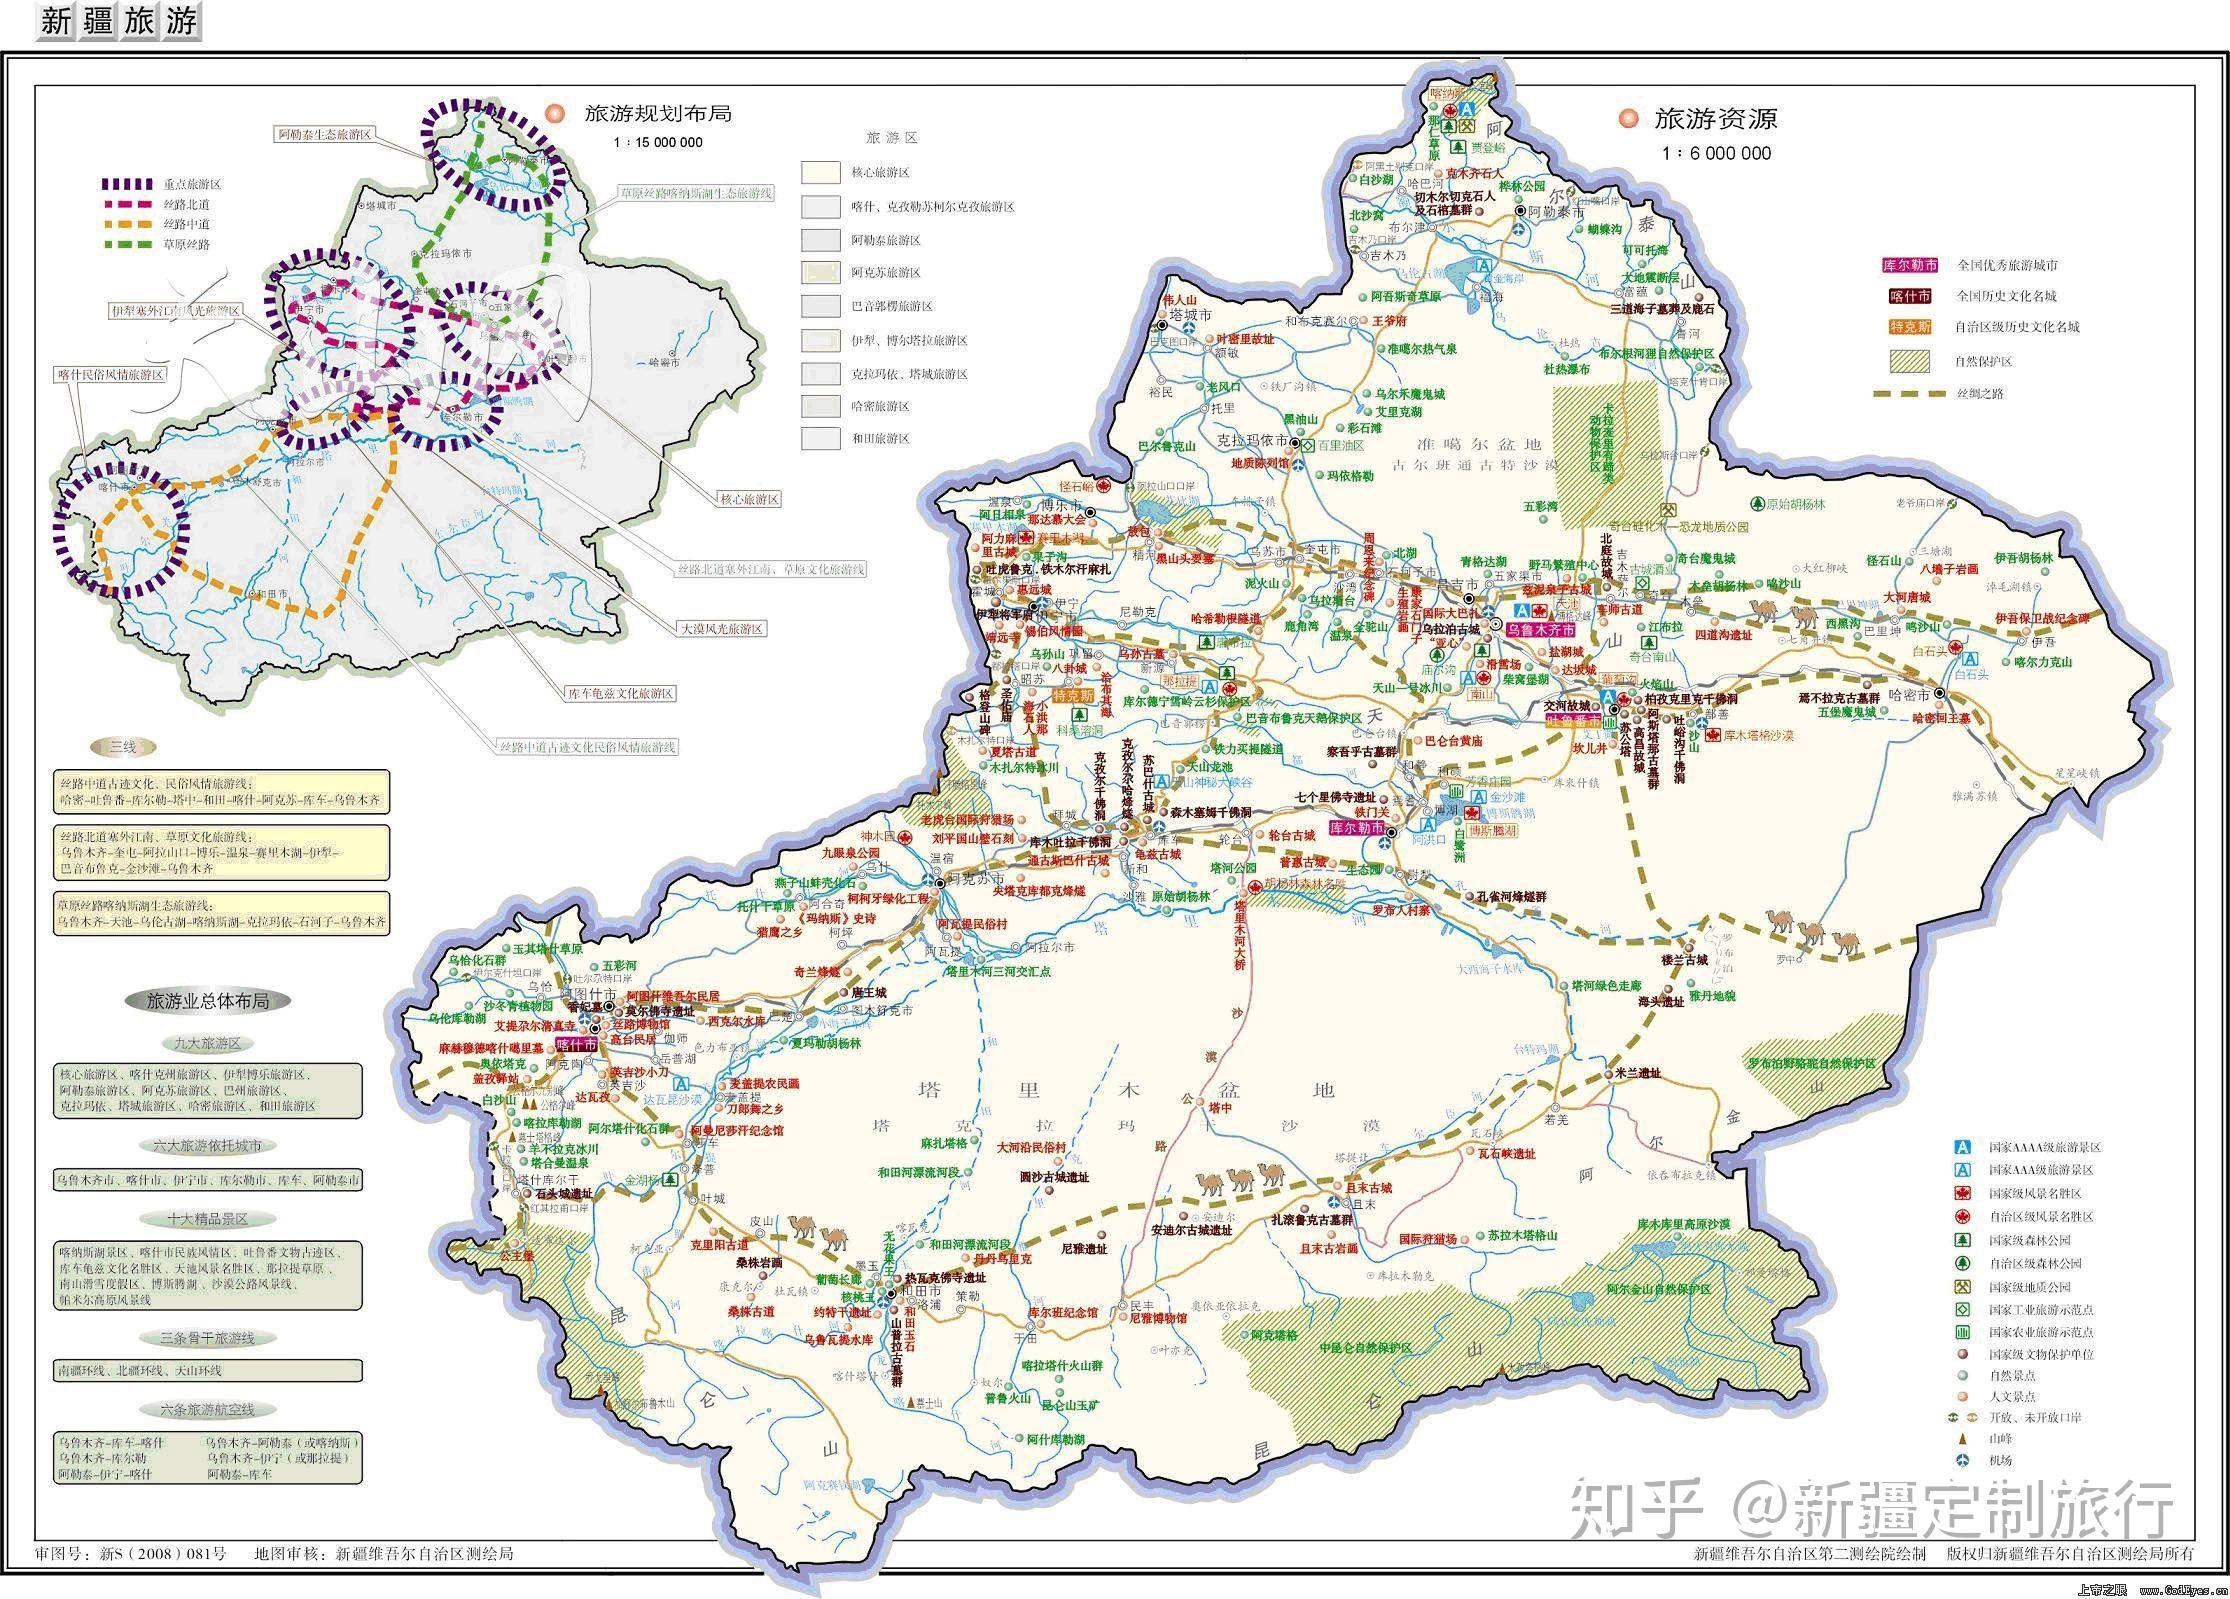 新疆地图|新疆地图全图高清版大图片|旅途风景图片网|www.visacits.com